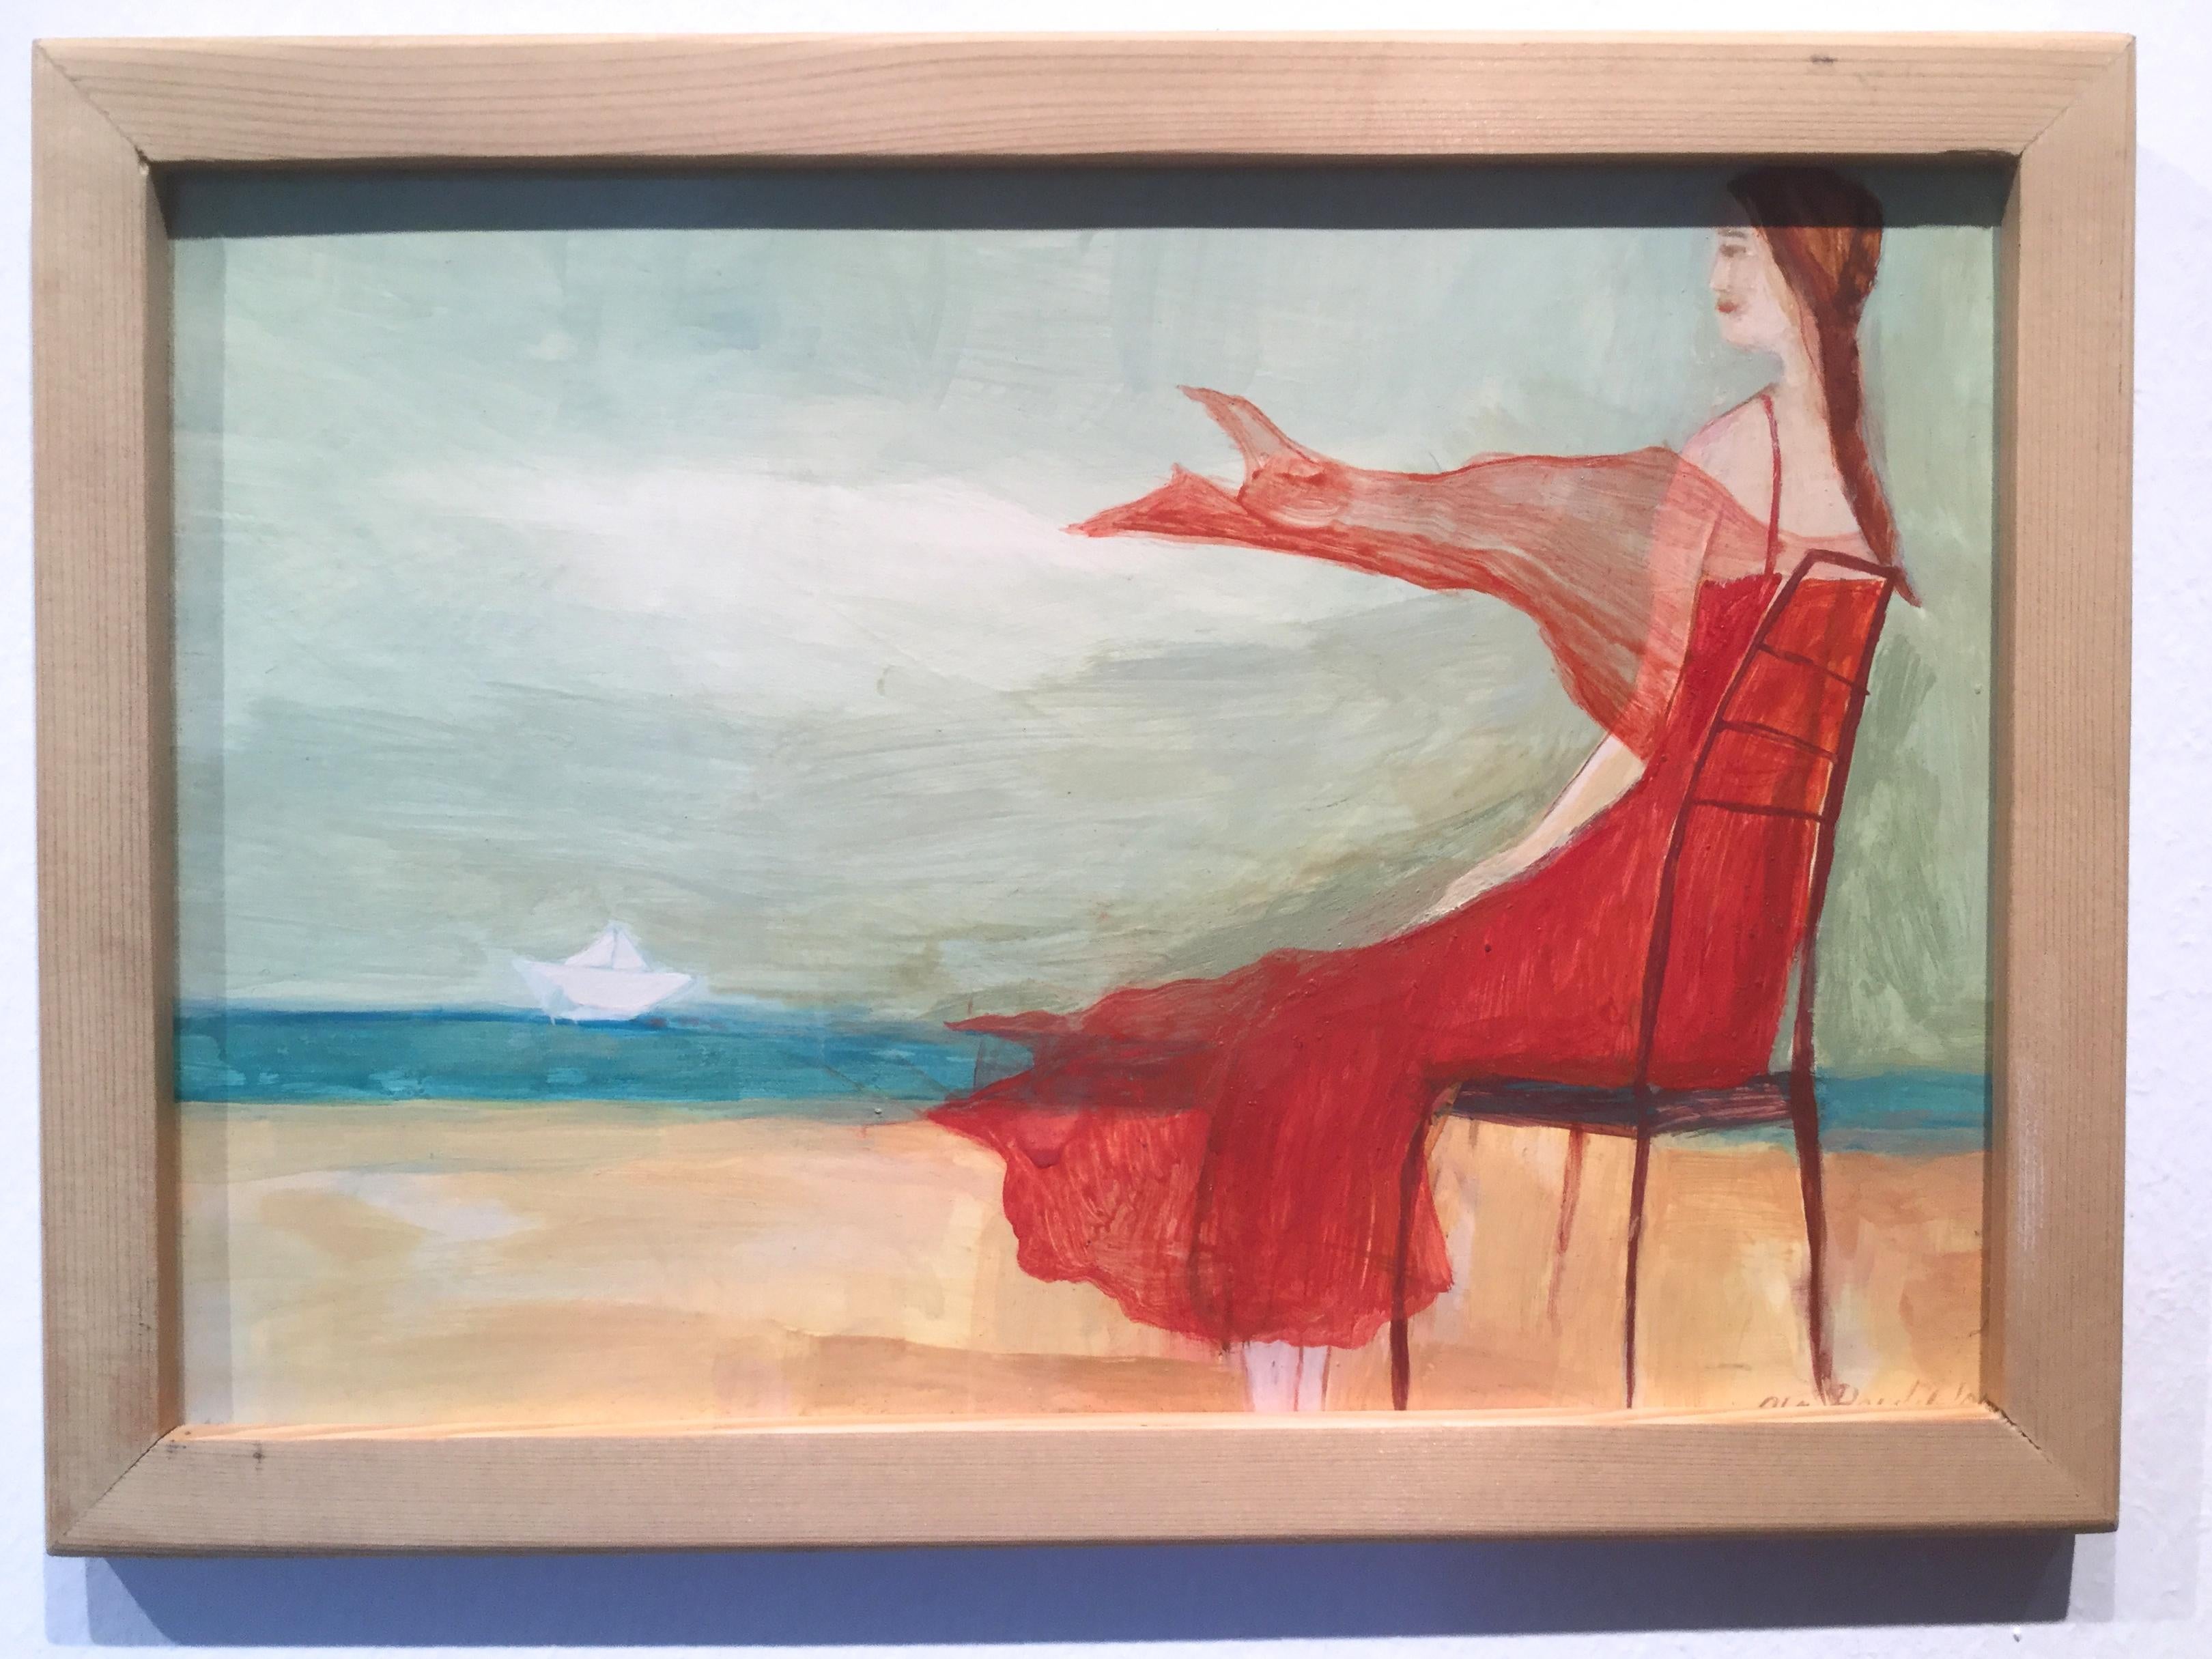 Mädchen in rotem Kleid mit Blicken auf das Meer - Anmutiges illustriertes, romantisches Gemälde – Painting von Aleksandra Pawlikowska